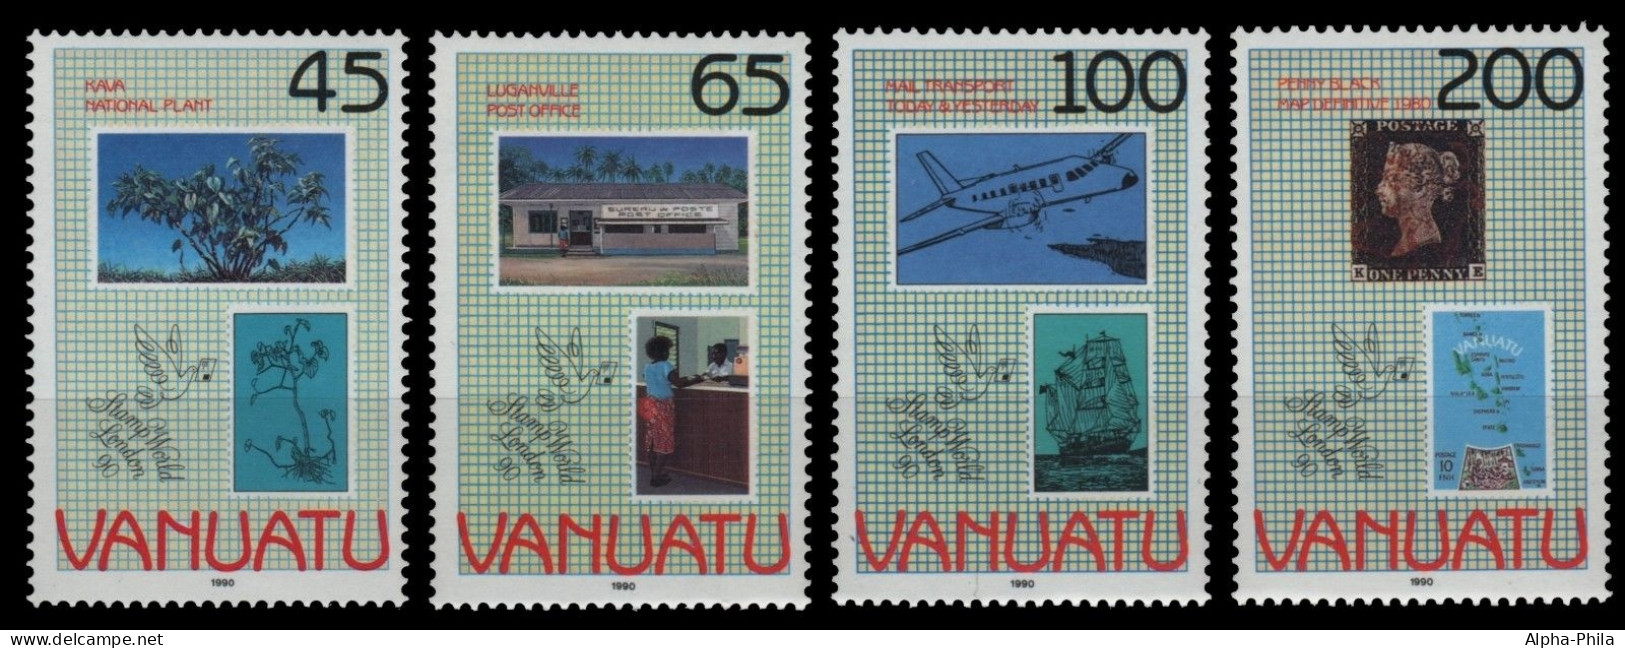 Vanuatu 1990 - Mi-Nr. 834-837 ** - MNH - Marke Auf Marke - Vanuatu (1980-...)